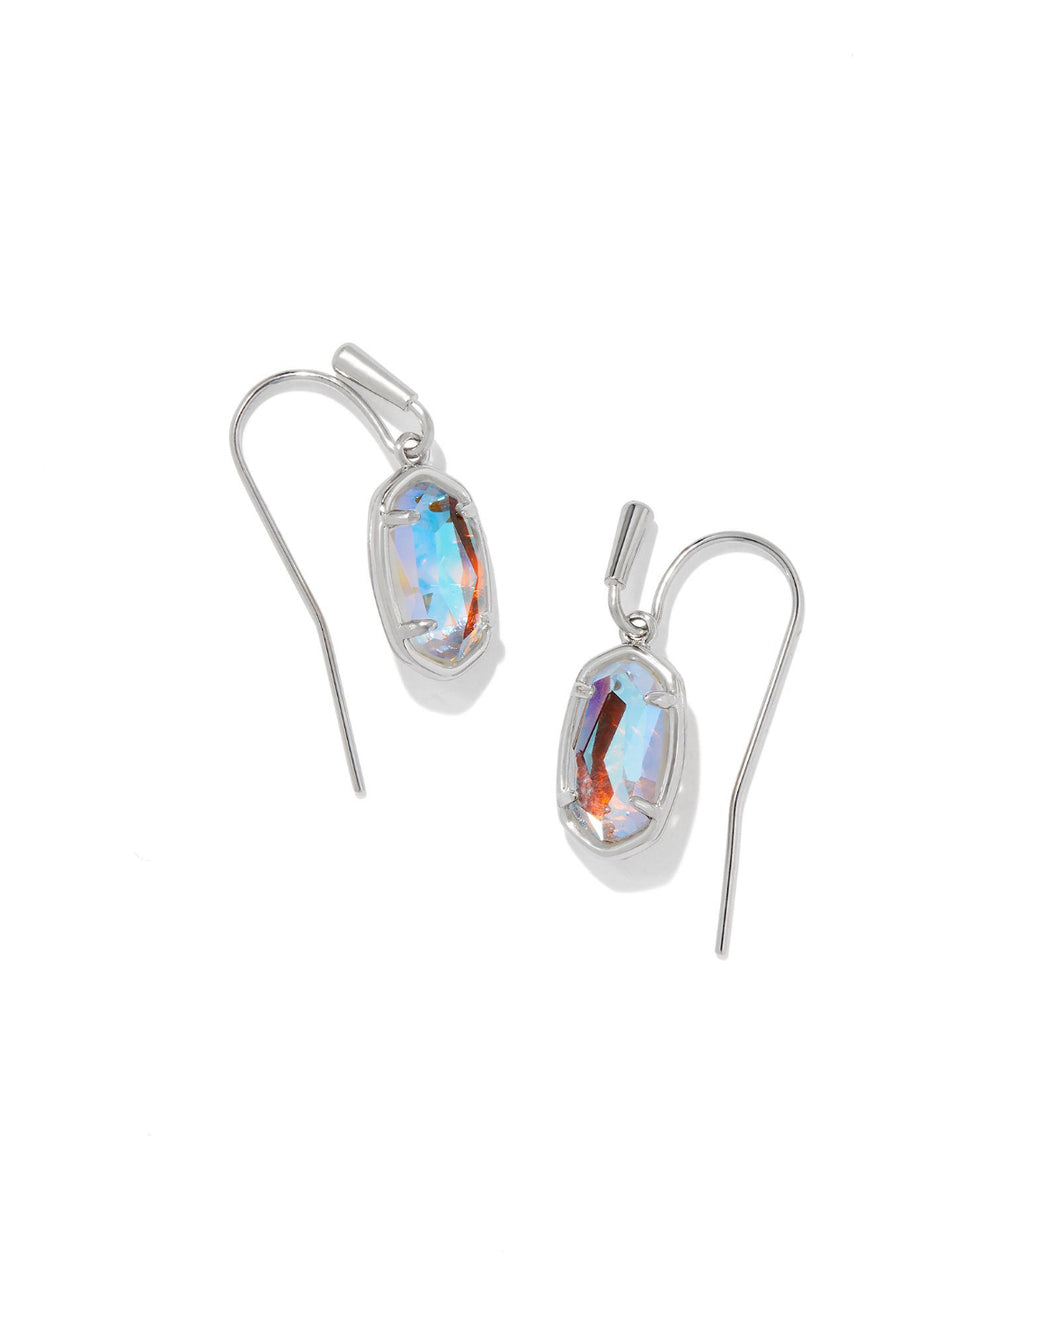 Kendra Scott: Grayson Drop Earrings in Silver Dichroic Glass